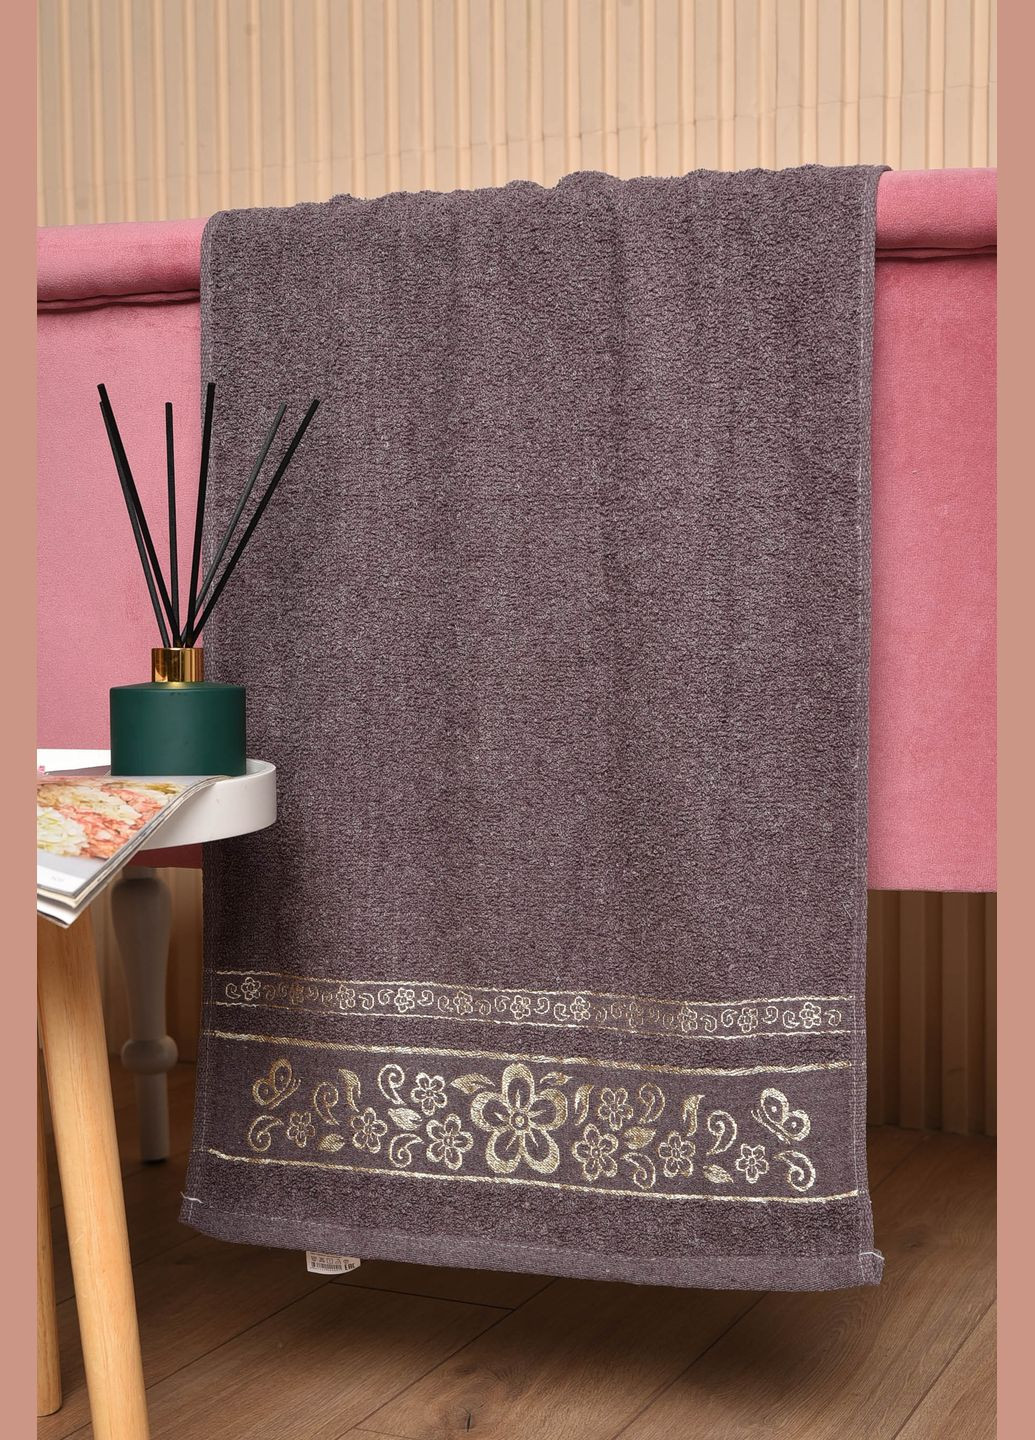 Let's Shop полотенце для лица махровое серого цвета однотонный серый производство - Турция